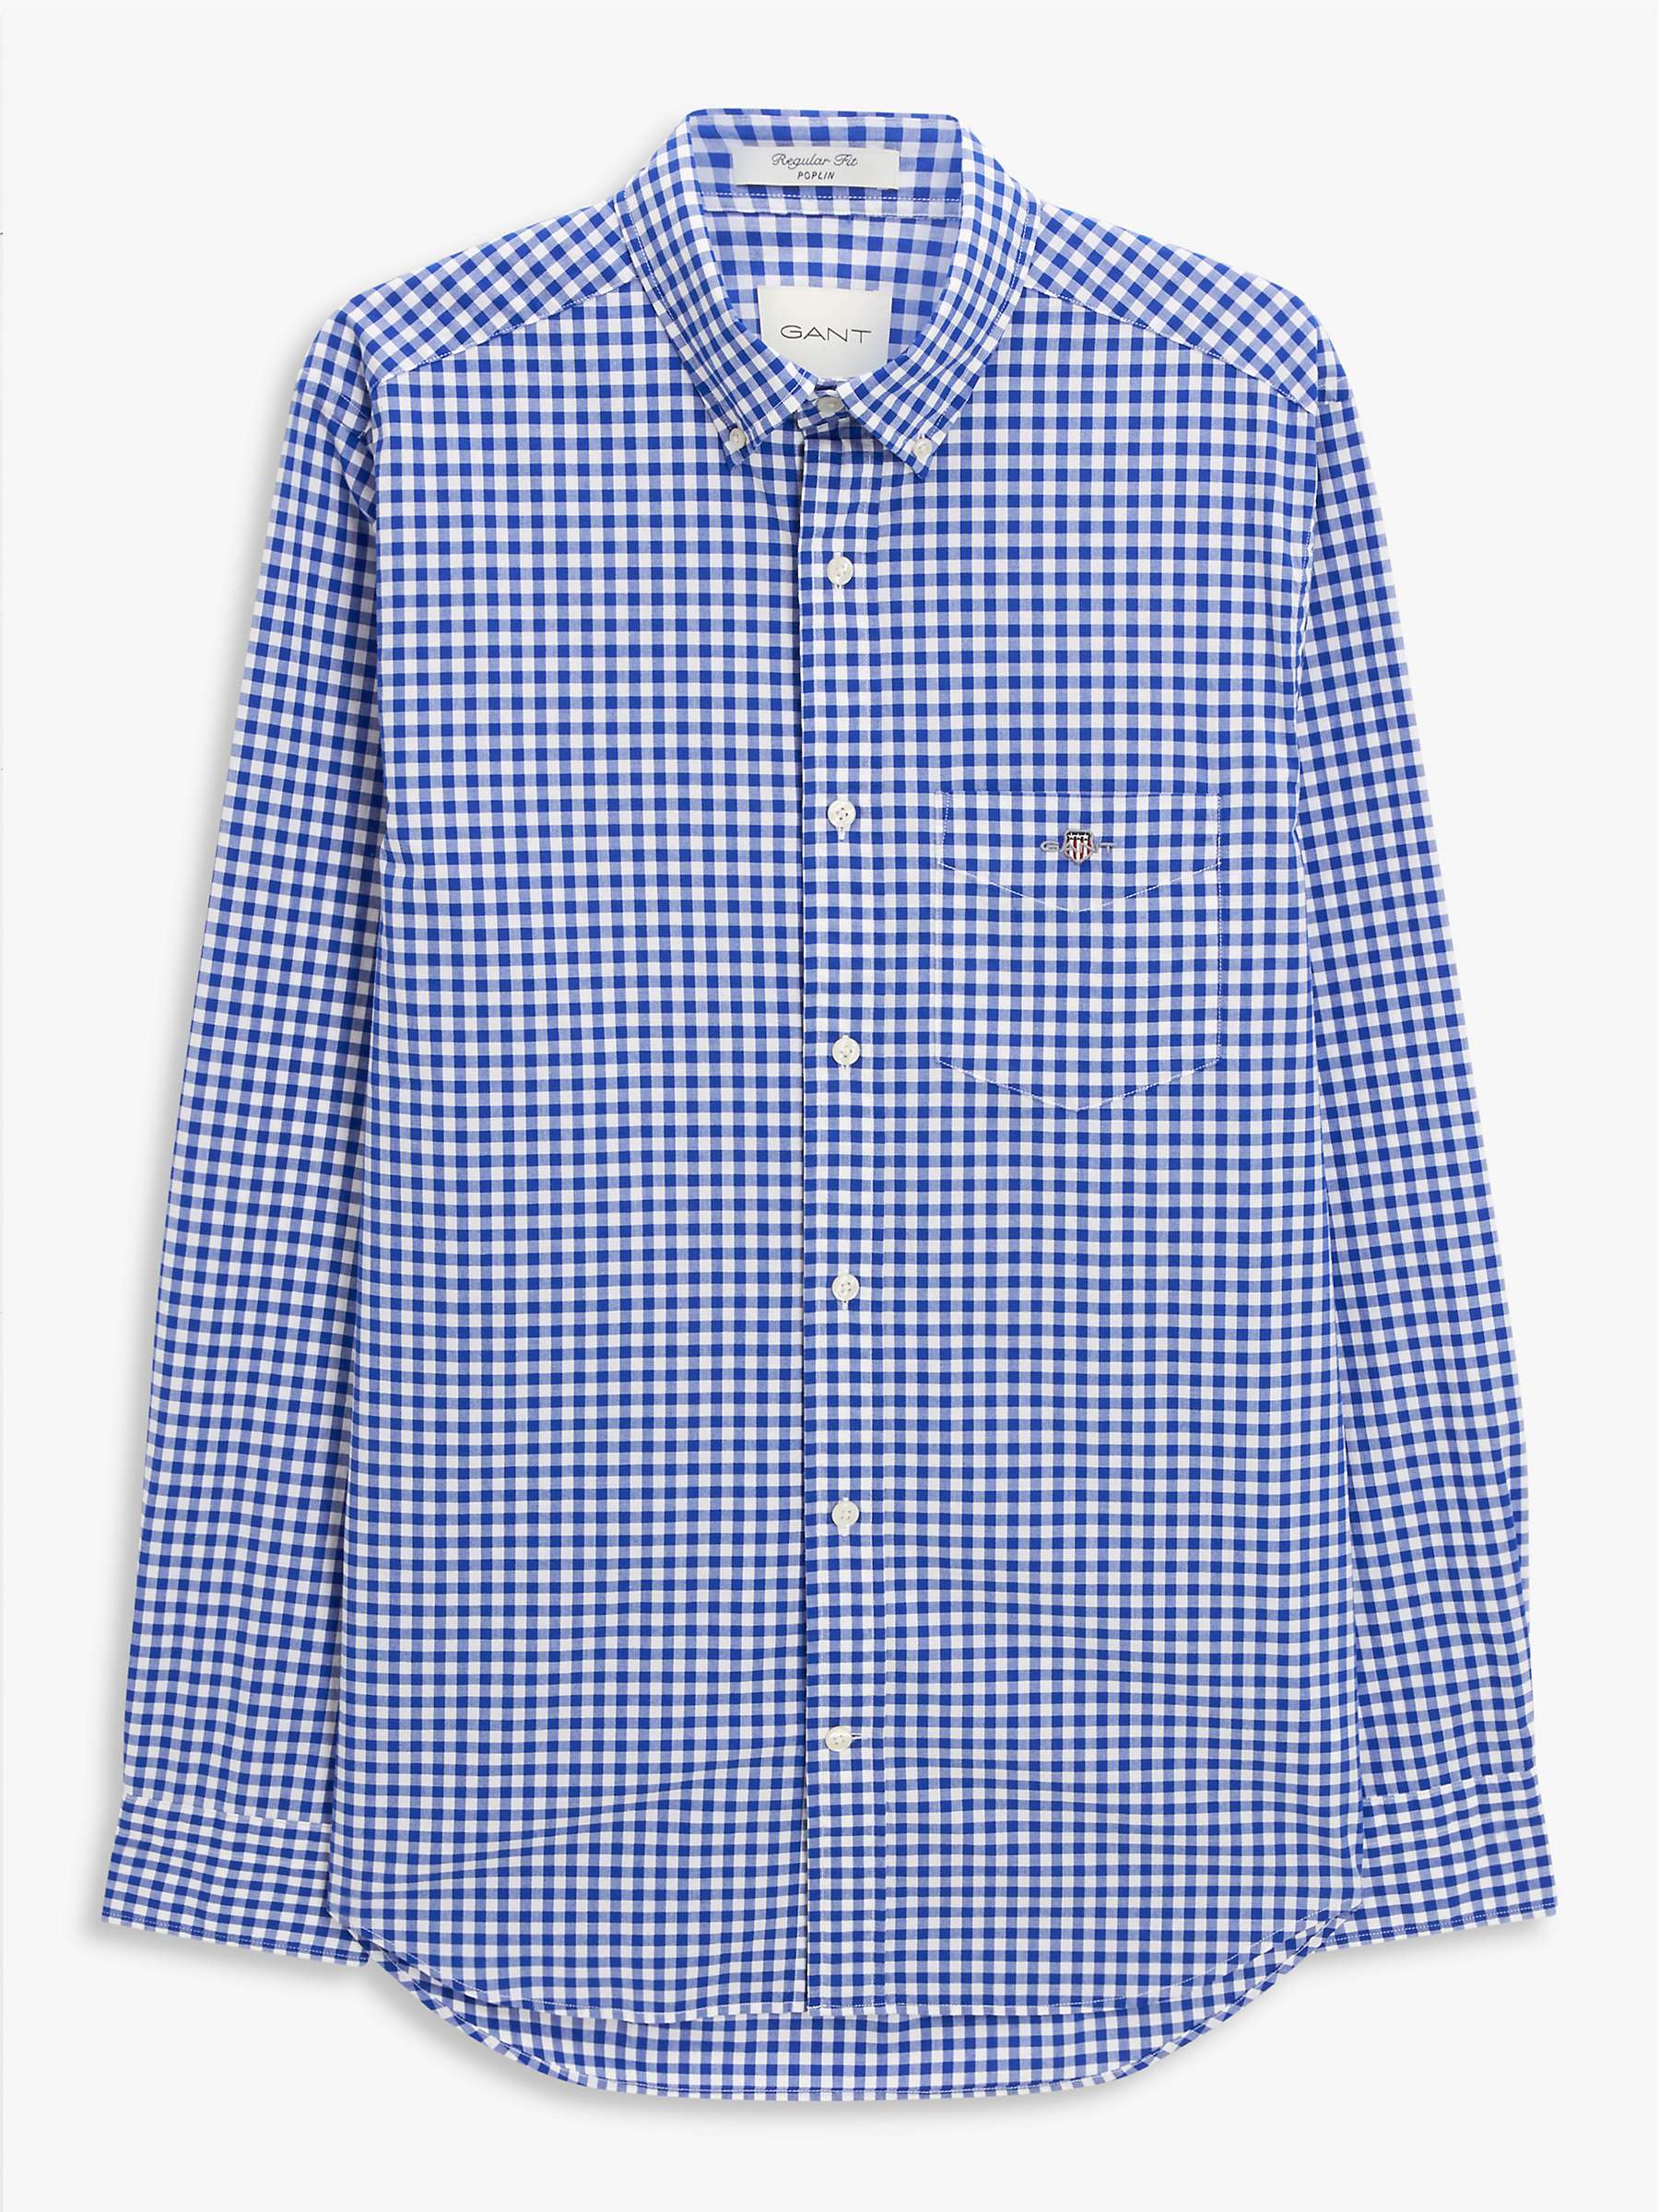 Buy GANT Regular Fit Poplin Gingham Shirt, 436 College Blue Online at johnlewis.com